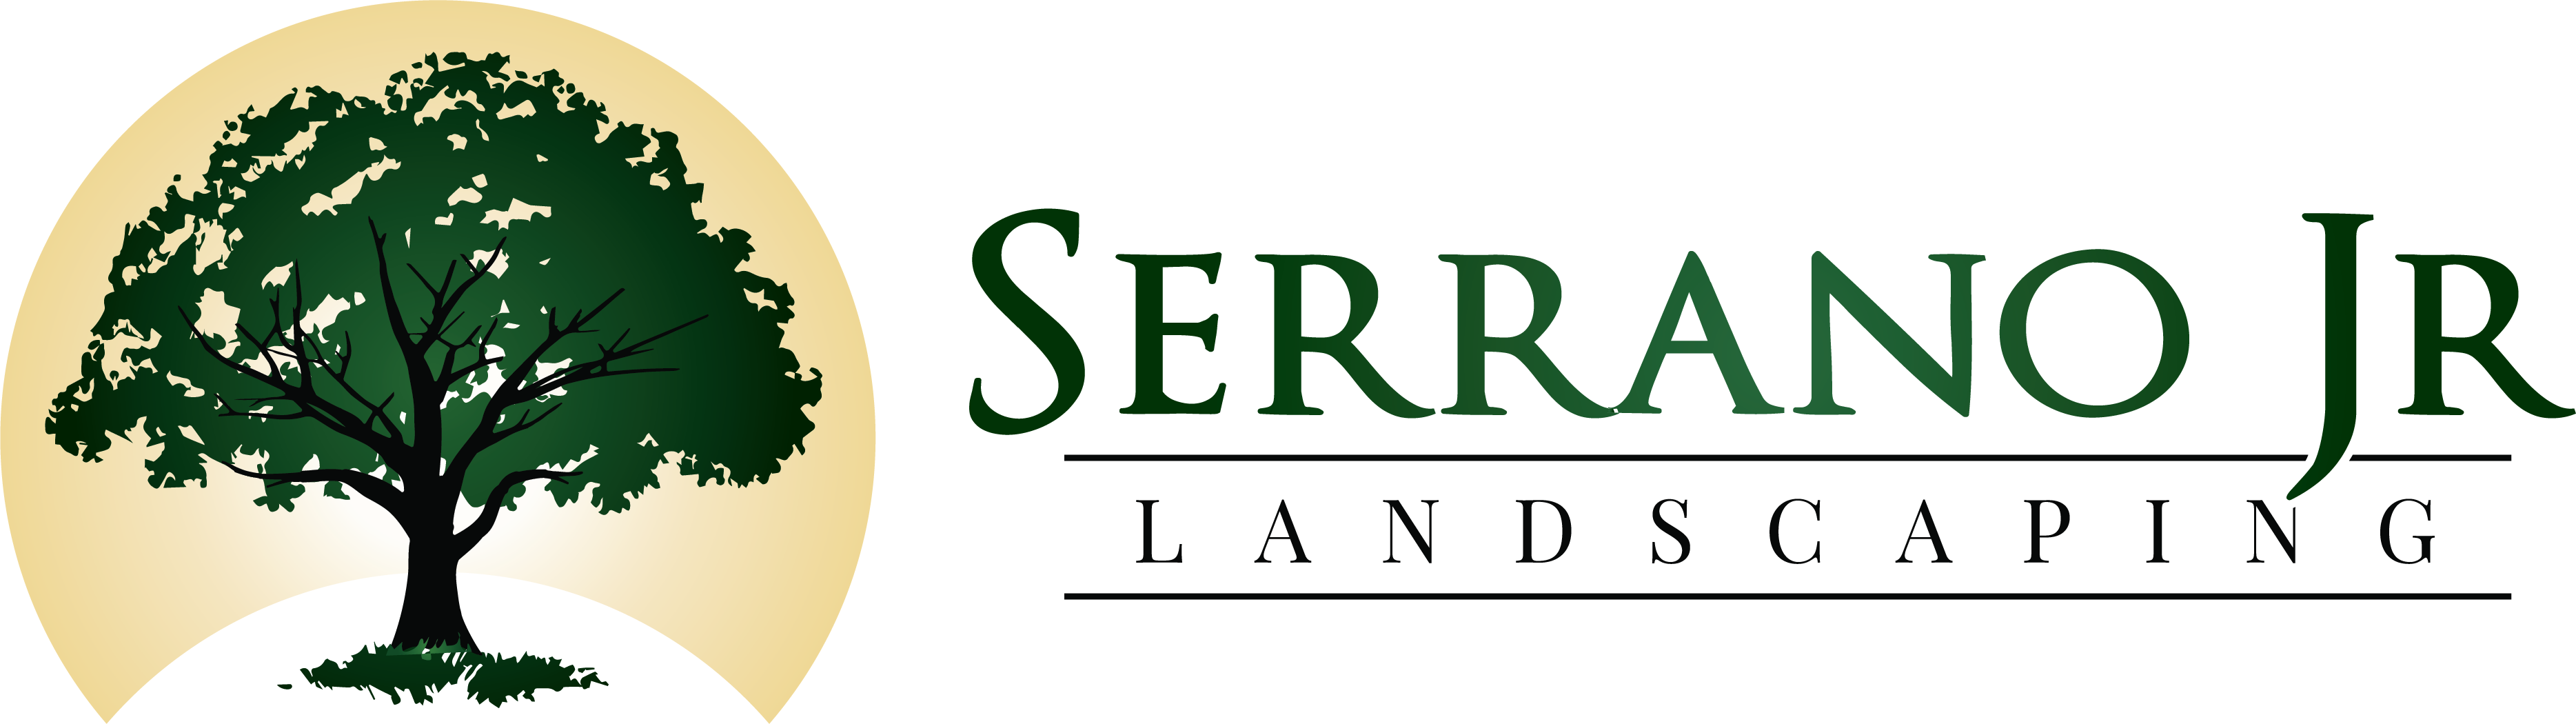 Serrano Jr. Landscaping